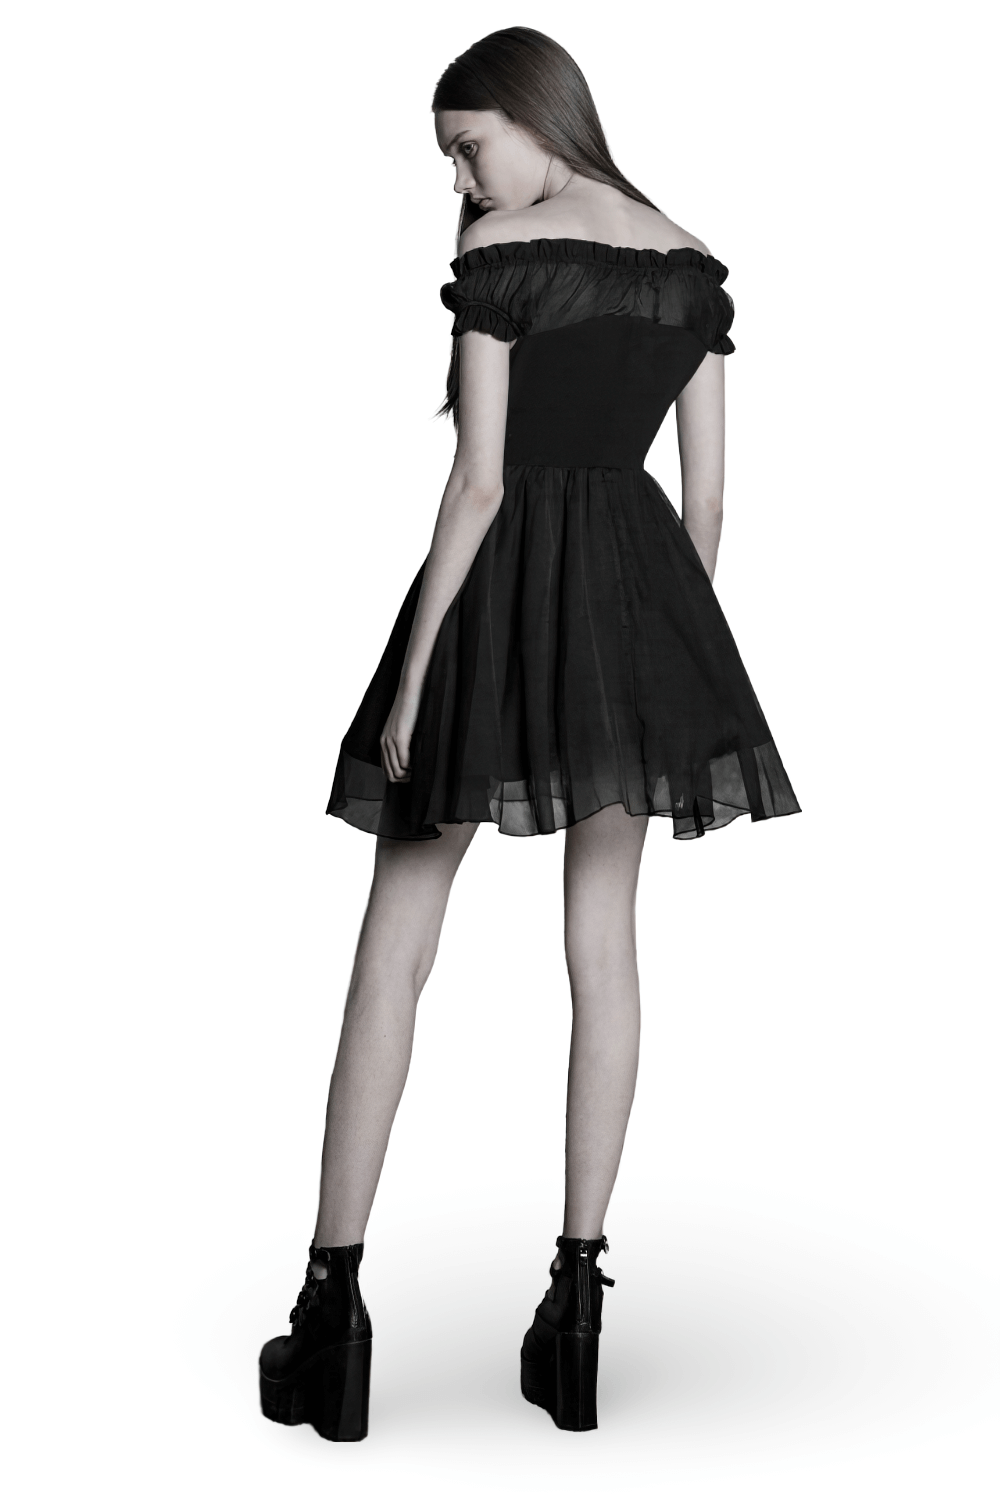 Elegant Punk Rave Gothic Black Off-Shoulder Dress